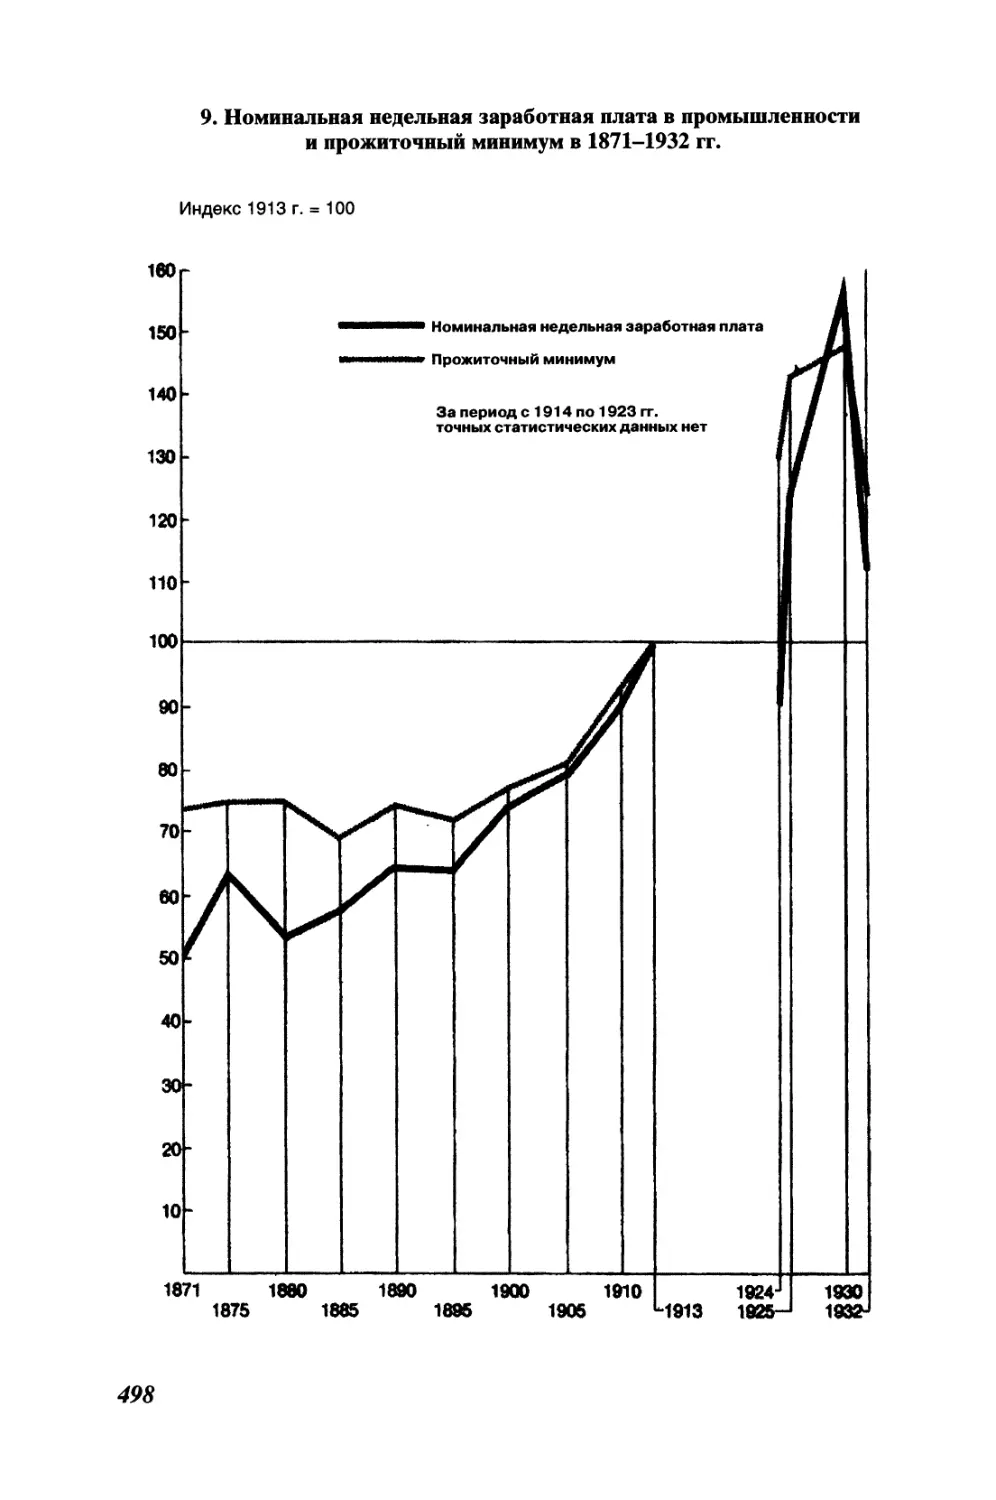 9. Номинальная недельная заработная плата в промышленности и прожиточный минимум в 1871-1932 гг